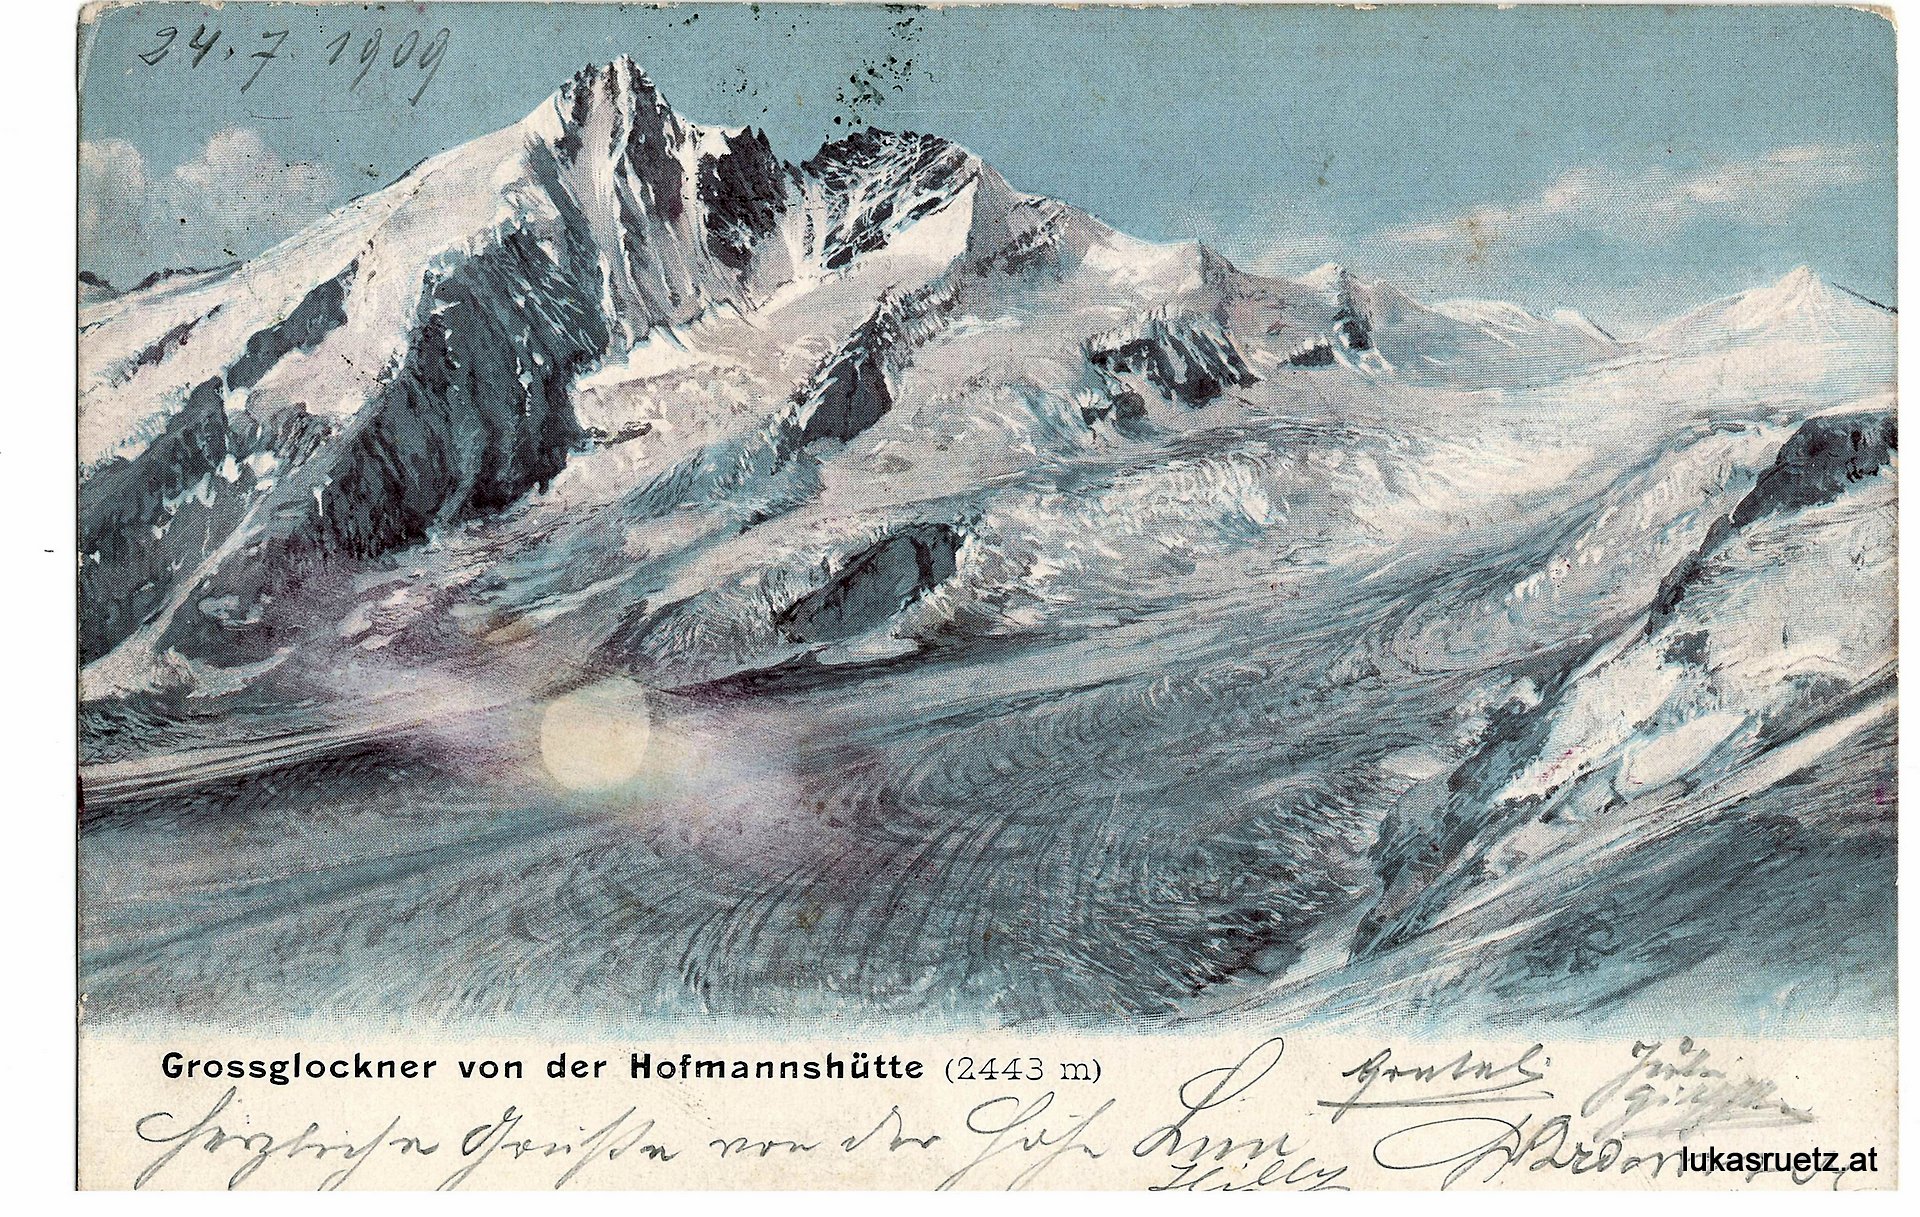 Gletschervergleiche bekannter Tiroler Berge